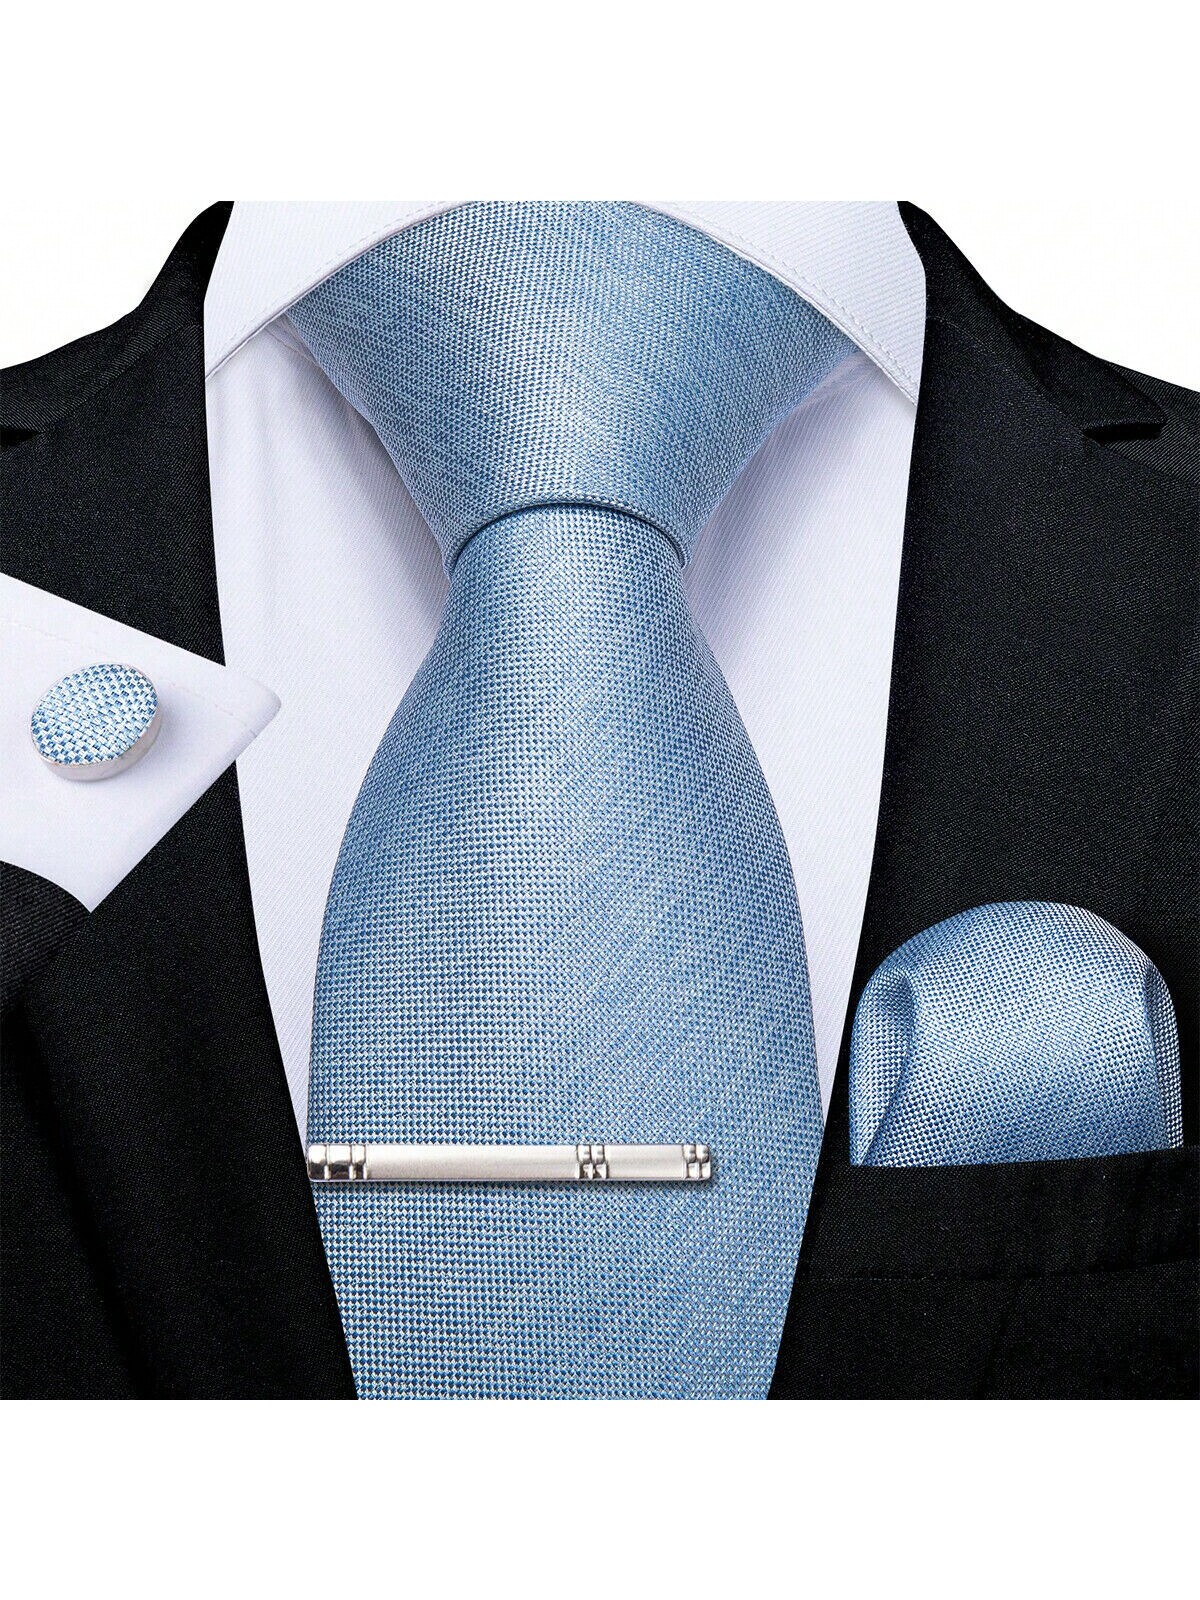 DiBanGu мужской галстук шелковый однотонный свадебный синий галстук карманные квадратные запонки клип набор Рождество 4 шт., голубые